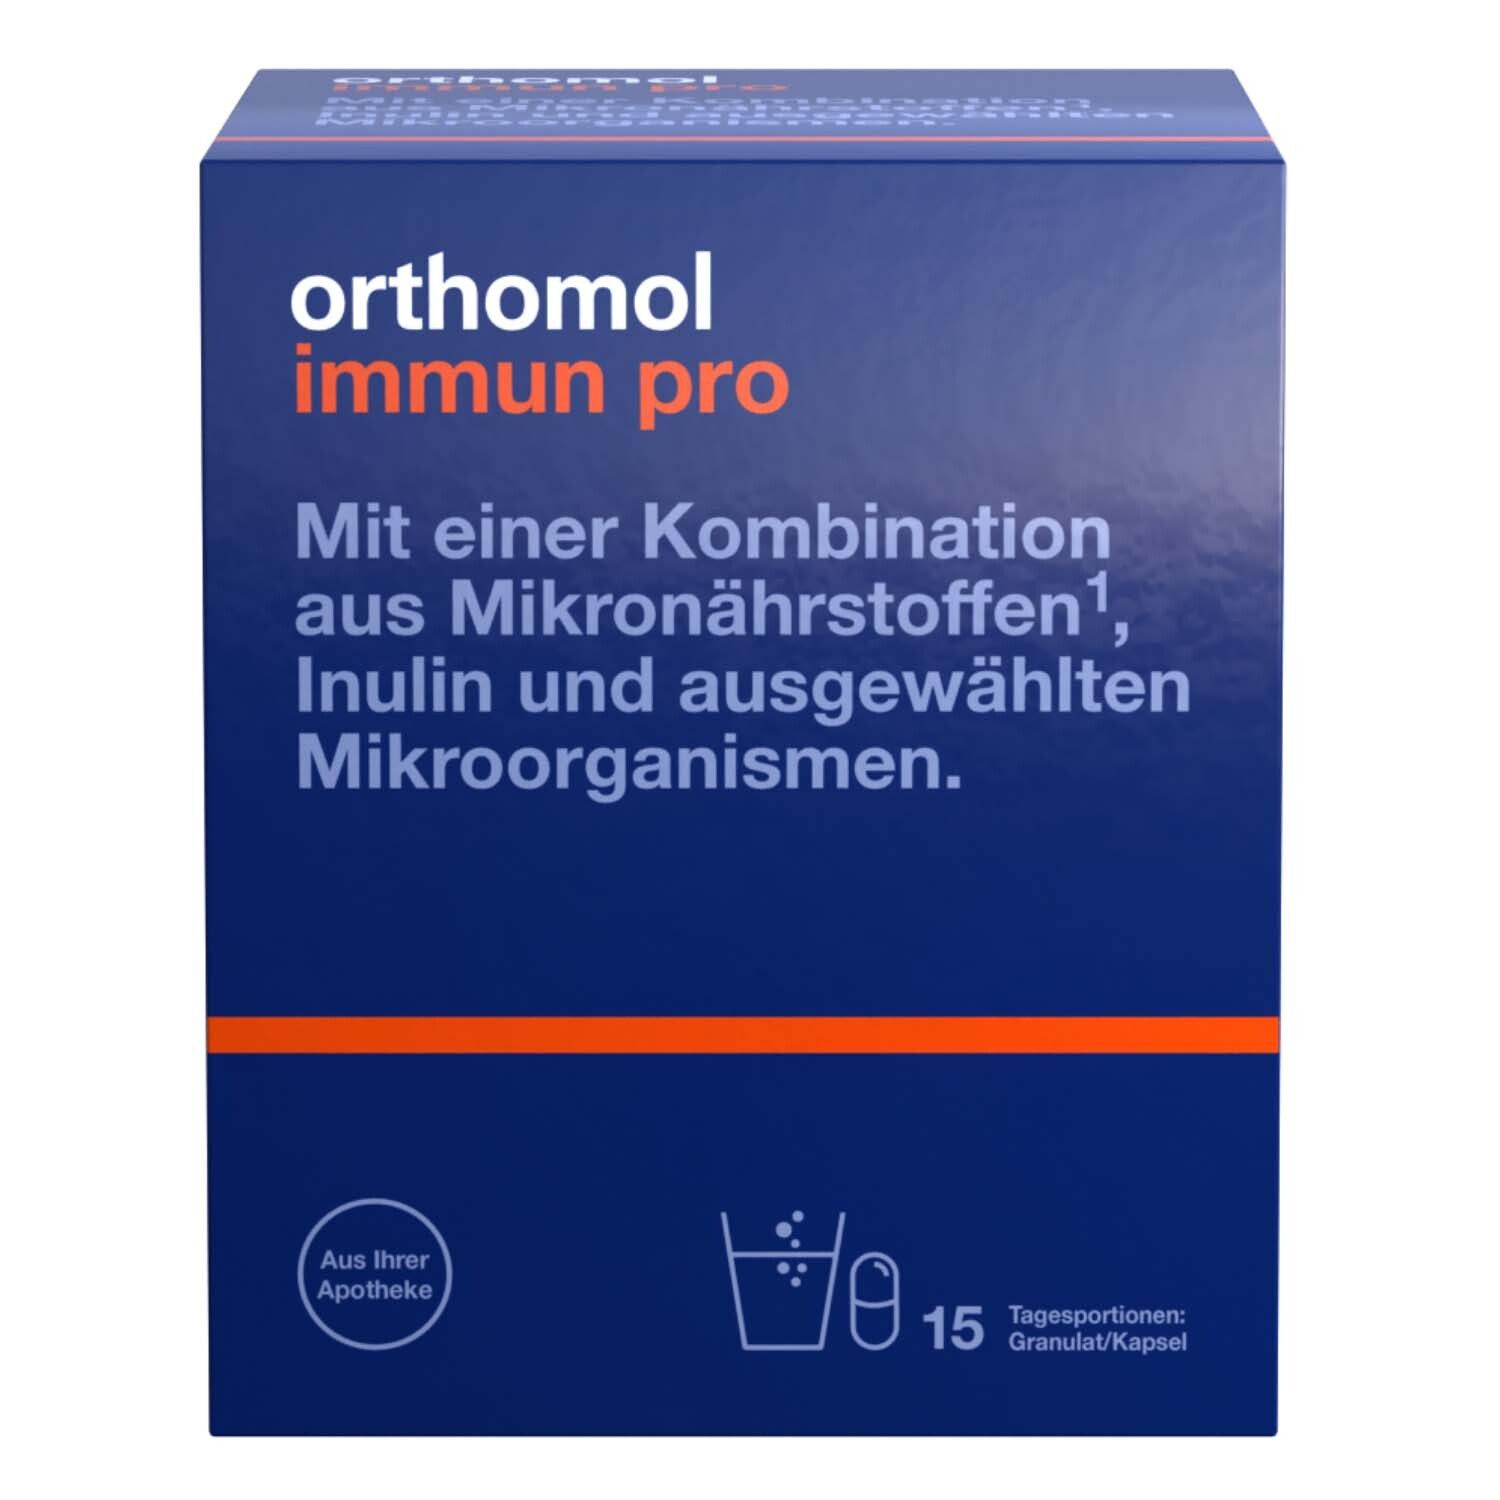 Orthomol Immun pro - für eine intakte Darmflora - Inulin, Mikronährstoffe und ausgewählte Mikroorganismen - Granulat/Kapseln